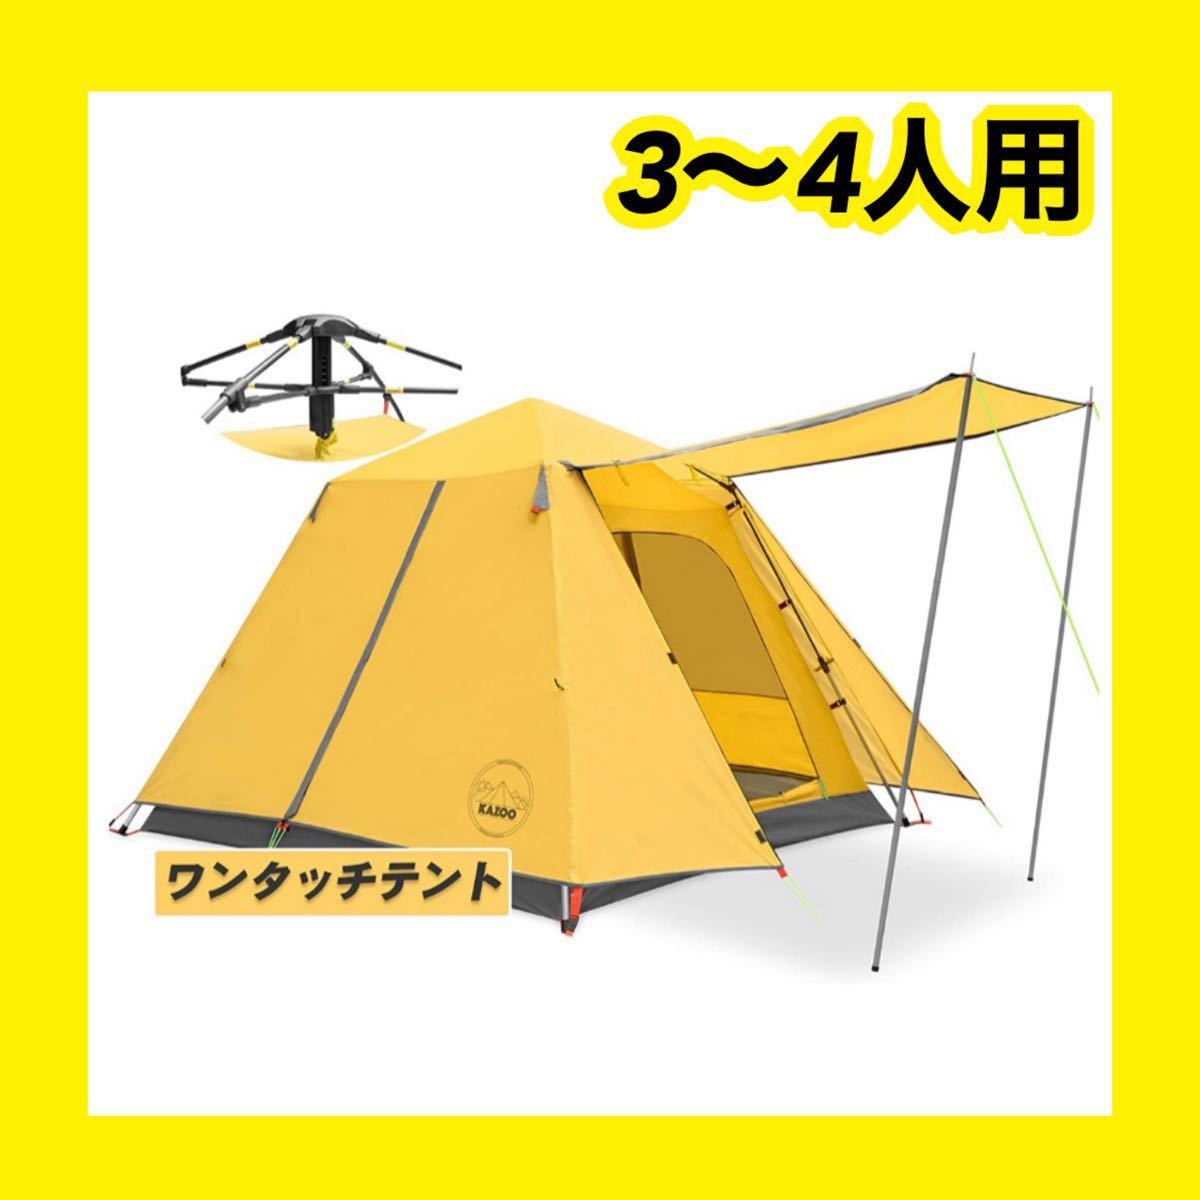 ワンタッチテント ポップアップ テント 3〜4人用 防水 設営簡単 アウトドア